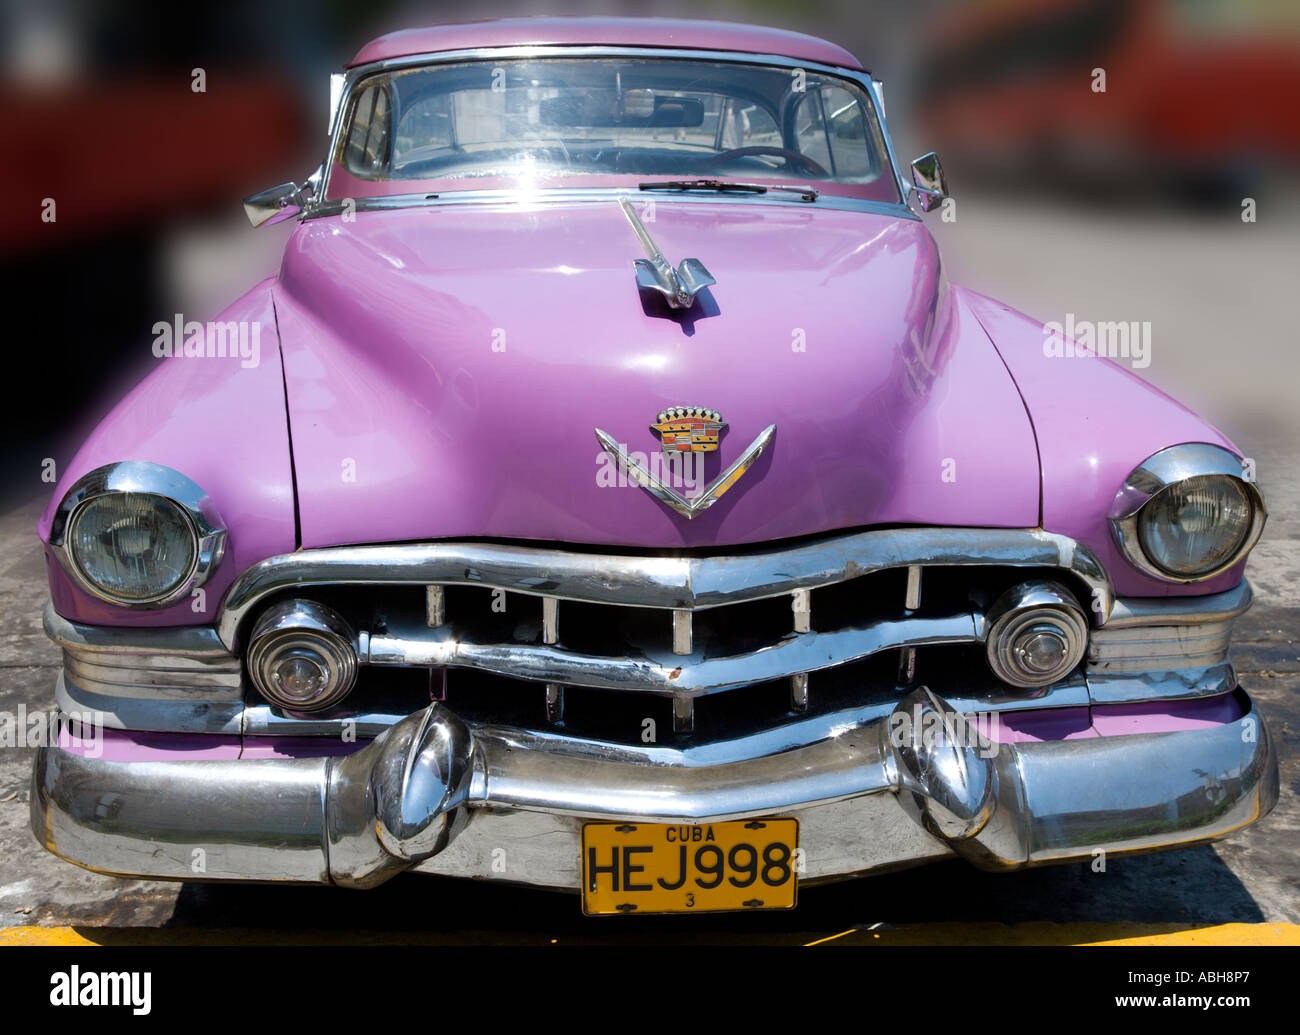 Vieille voiture américaine, Habana Vieja, La Havane, Cuba, Caraïbes Banque D'Images